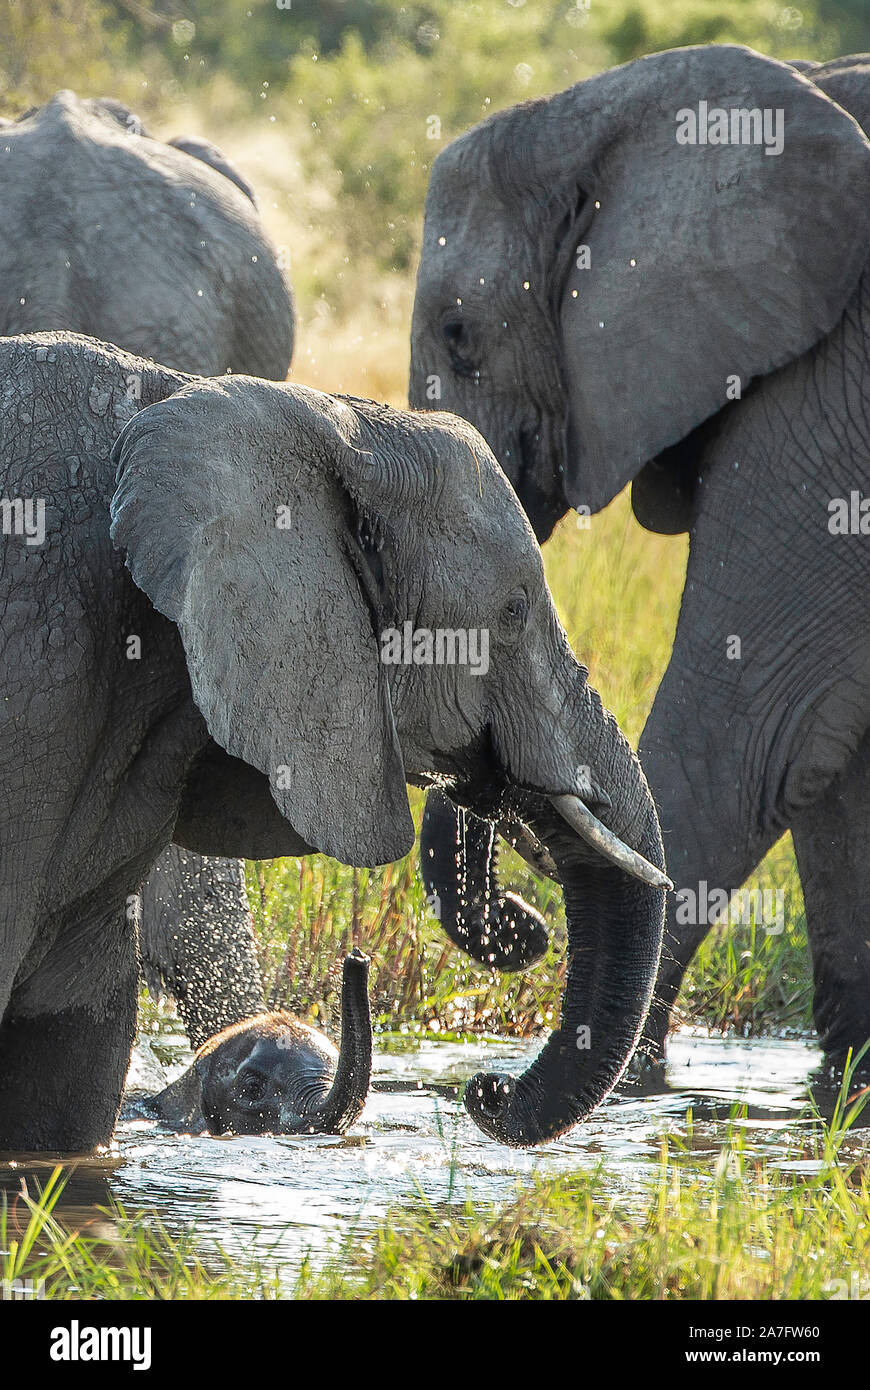 Un bebé elefante parcialmente sumergido en el río con el tronco levantado Foto de stock